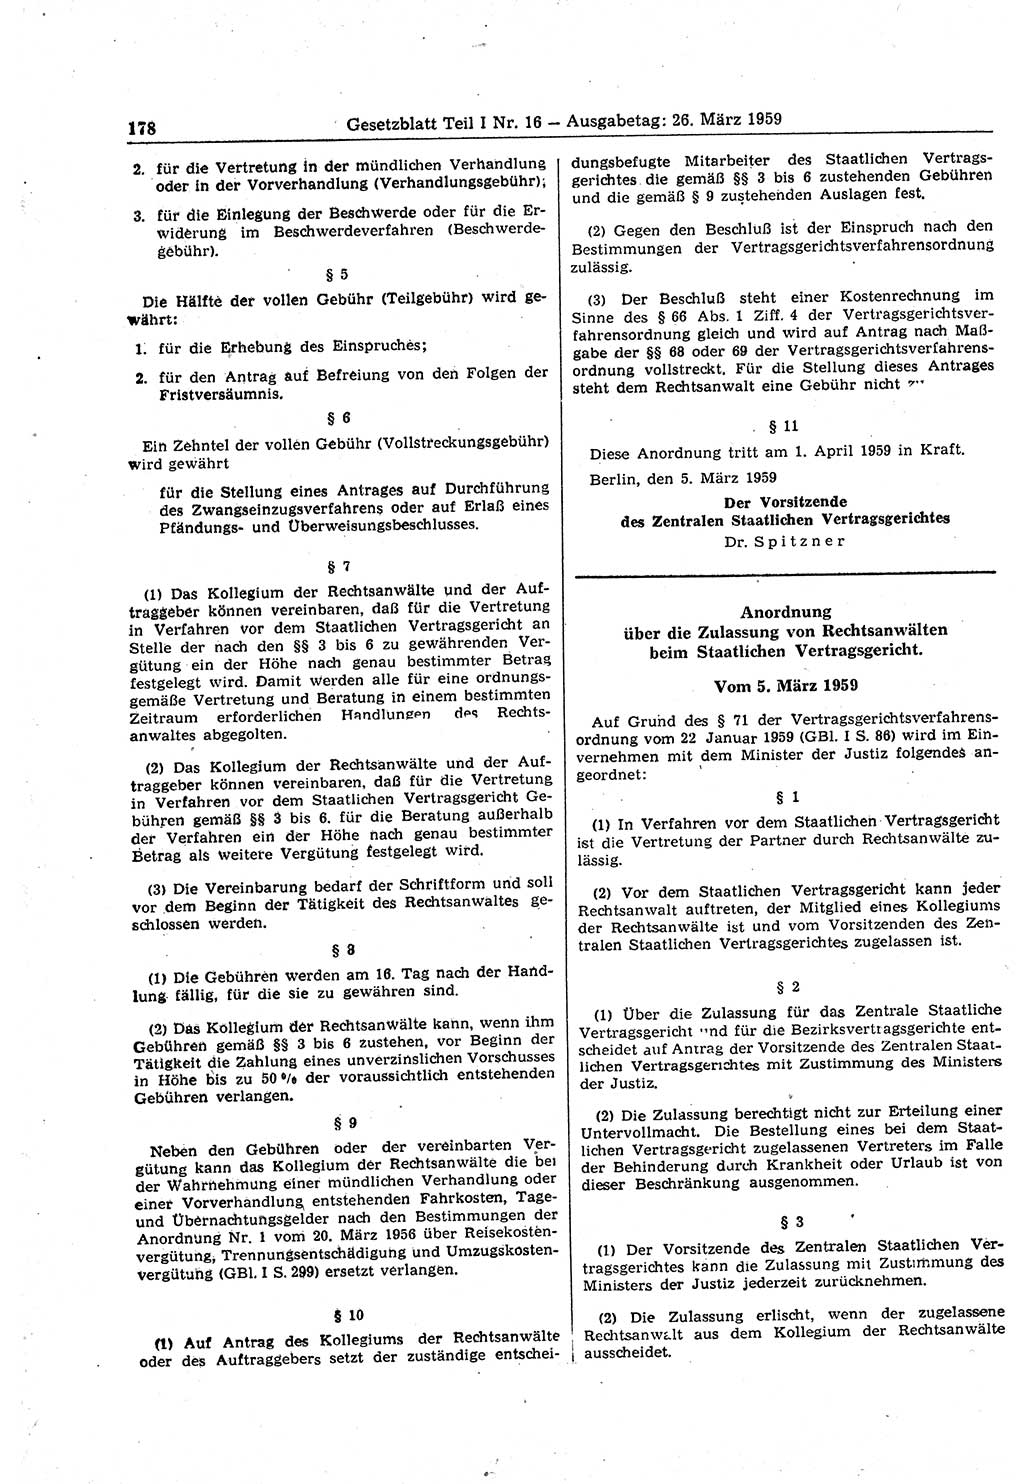 Gesetzblatt (GBl.) der Deutschen Demokratischen Republik (DDR) Teil Ⅰ 1959, Seite 178 (GBl. DDR Ⅰ 1959, S. 178)